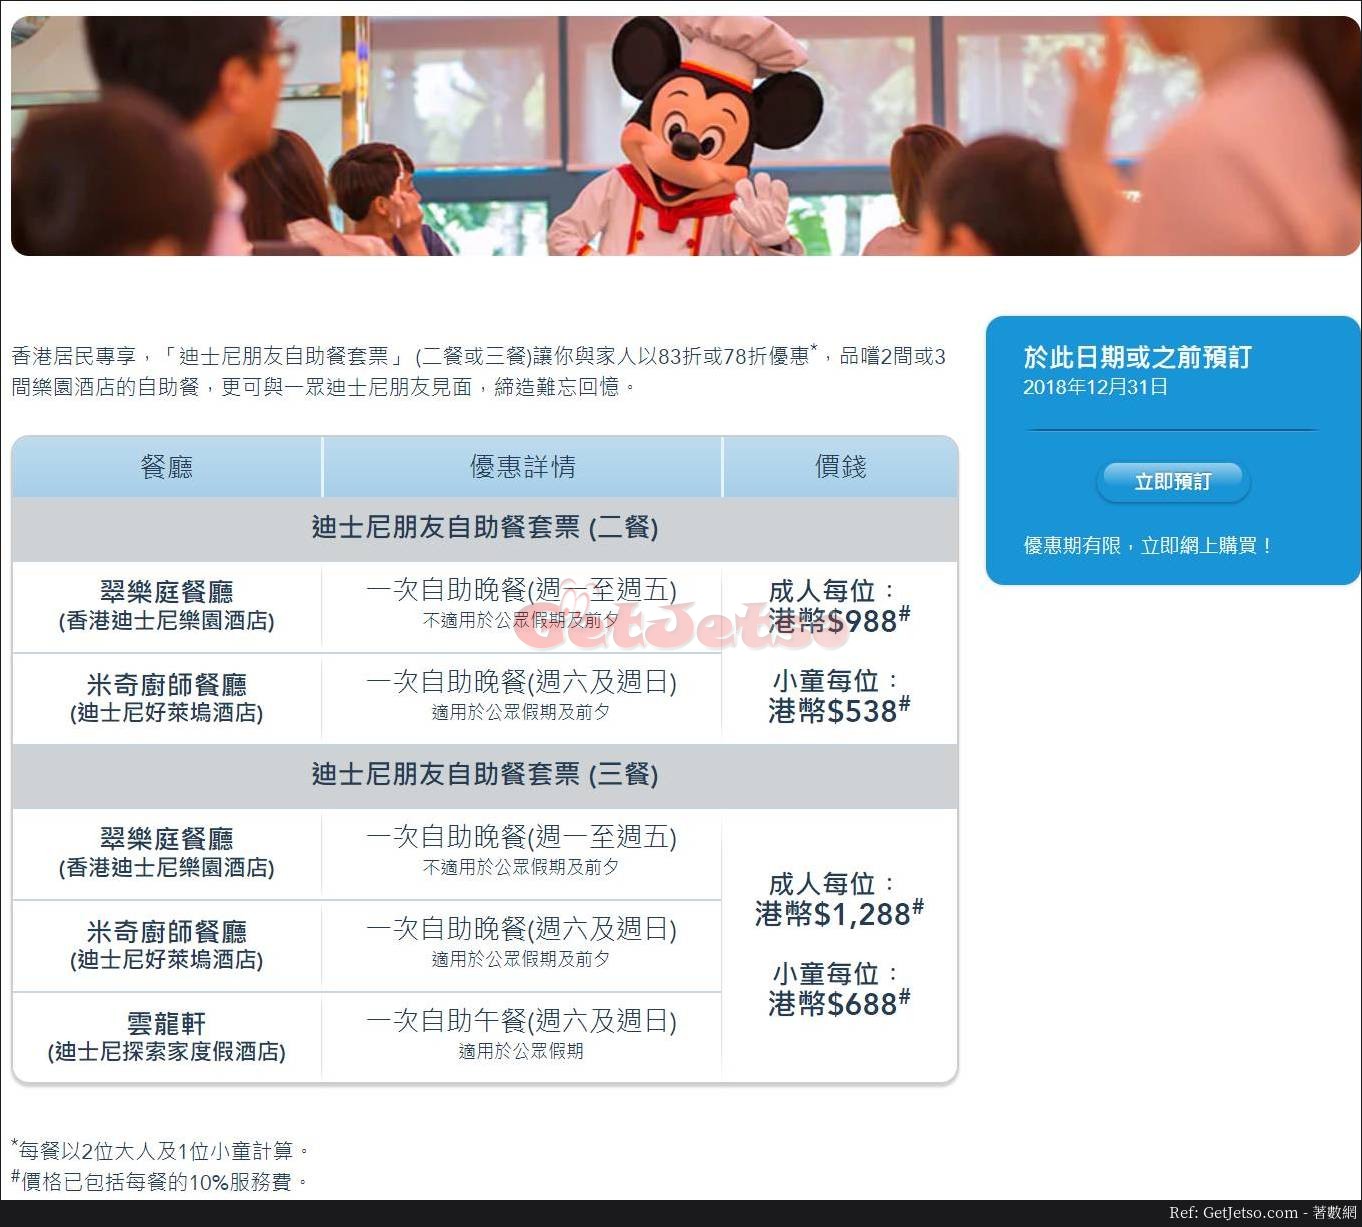 香港迪士尼樂園港人享低至78折自助餐套票優惠(至18年12月31日)圖片1